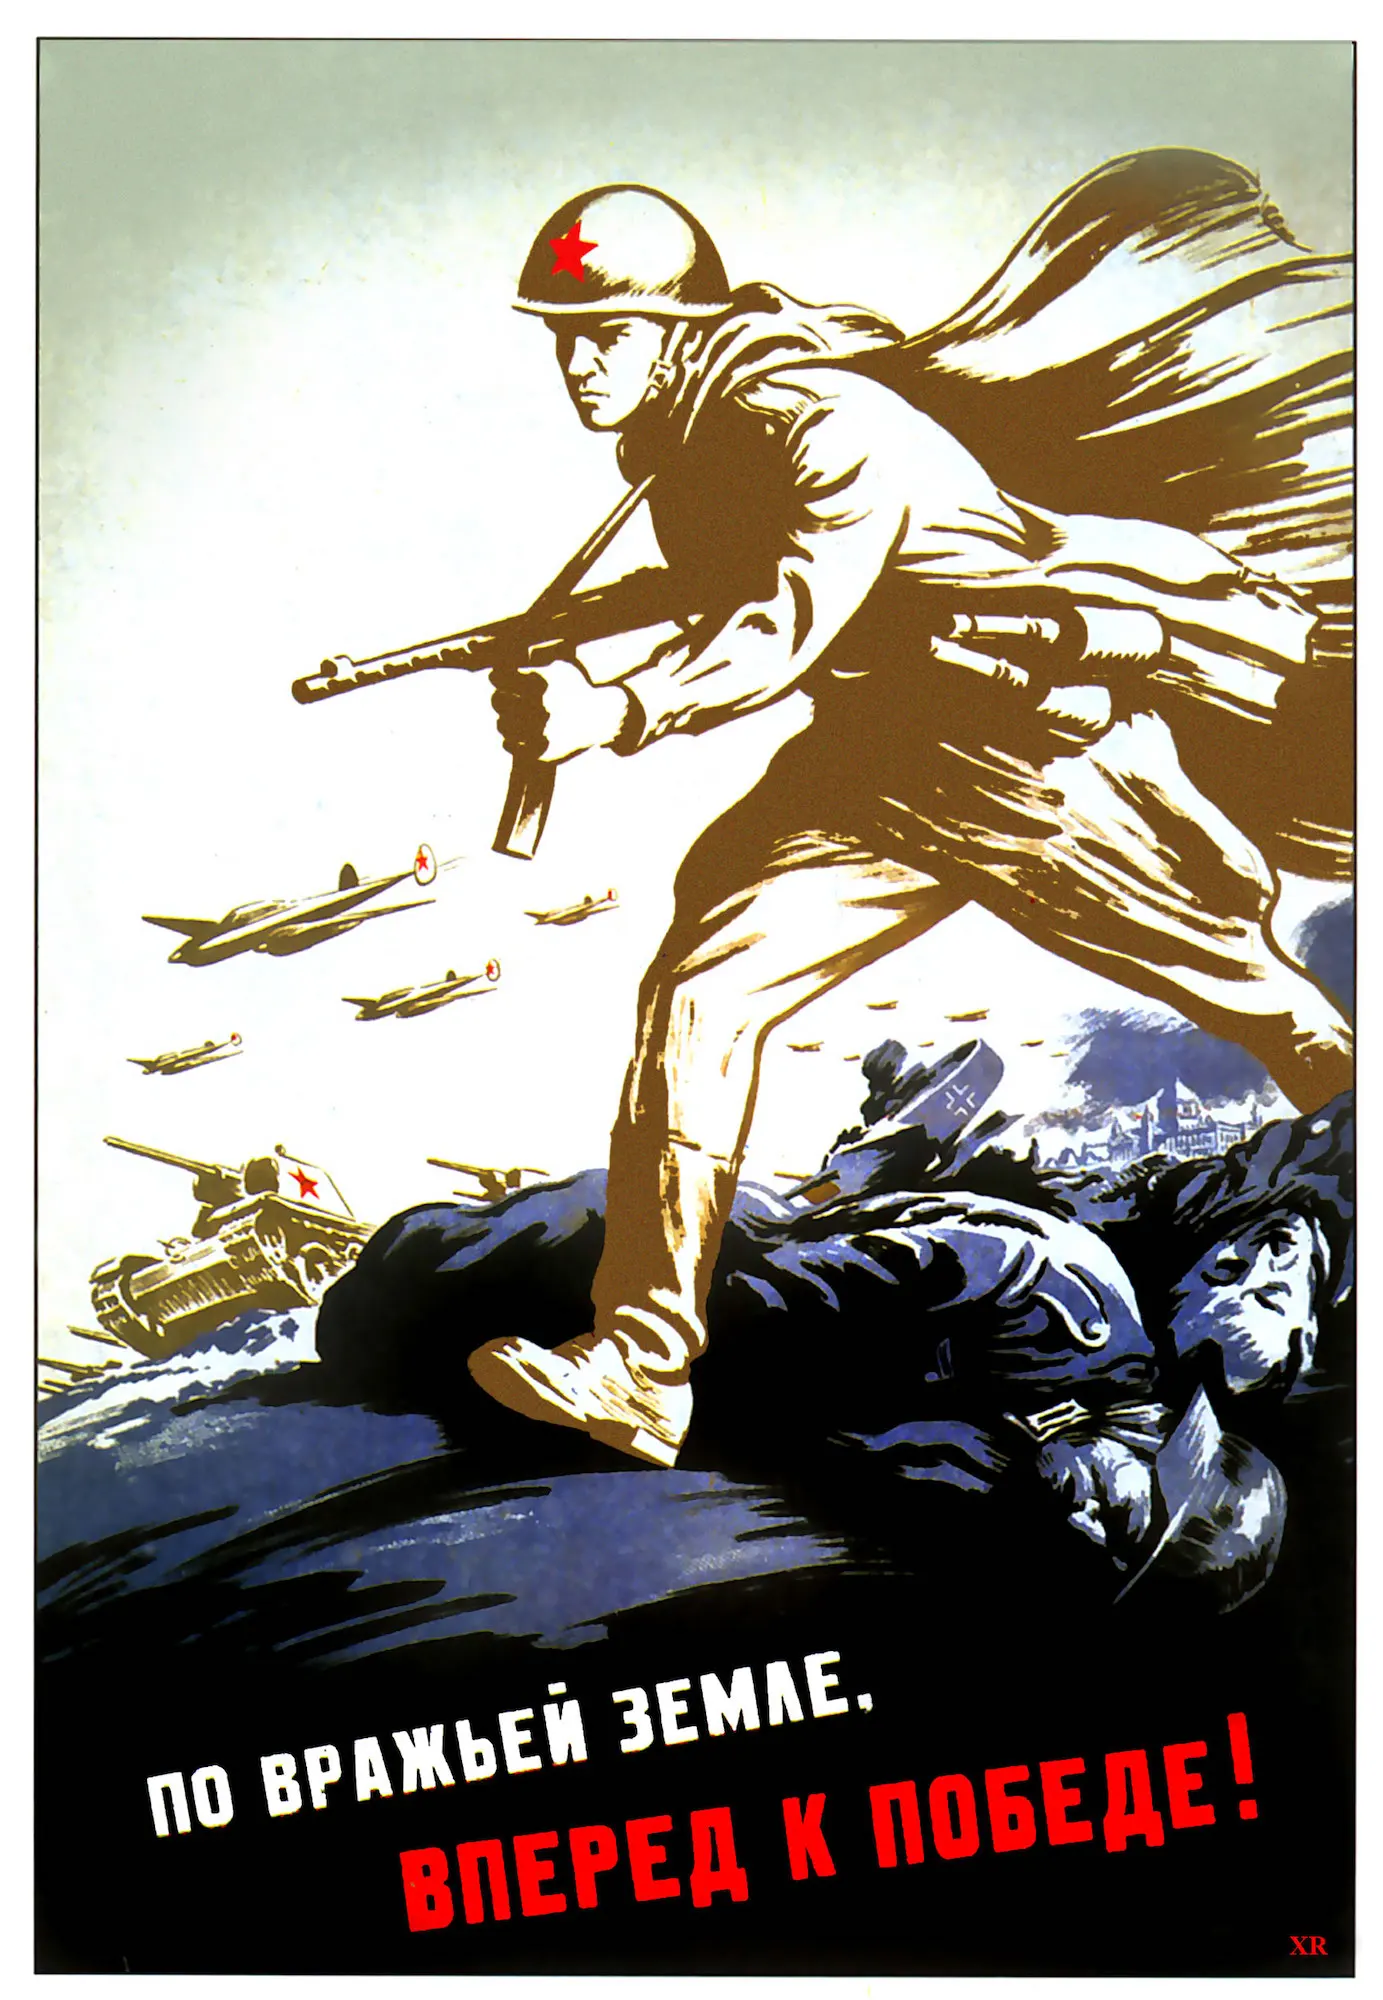 Первый плакат великой отечественной войны. По вражьей земле вперед к победе плакат. Советские плакаты времён Великой Отечественной войны 1941-1945. Военные плакаты. Плакаты времен войны.